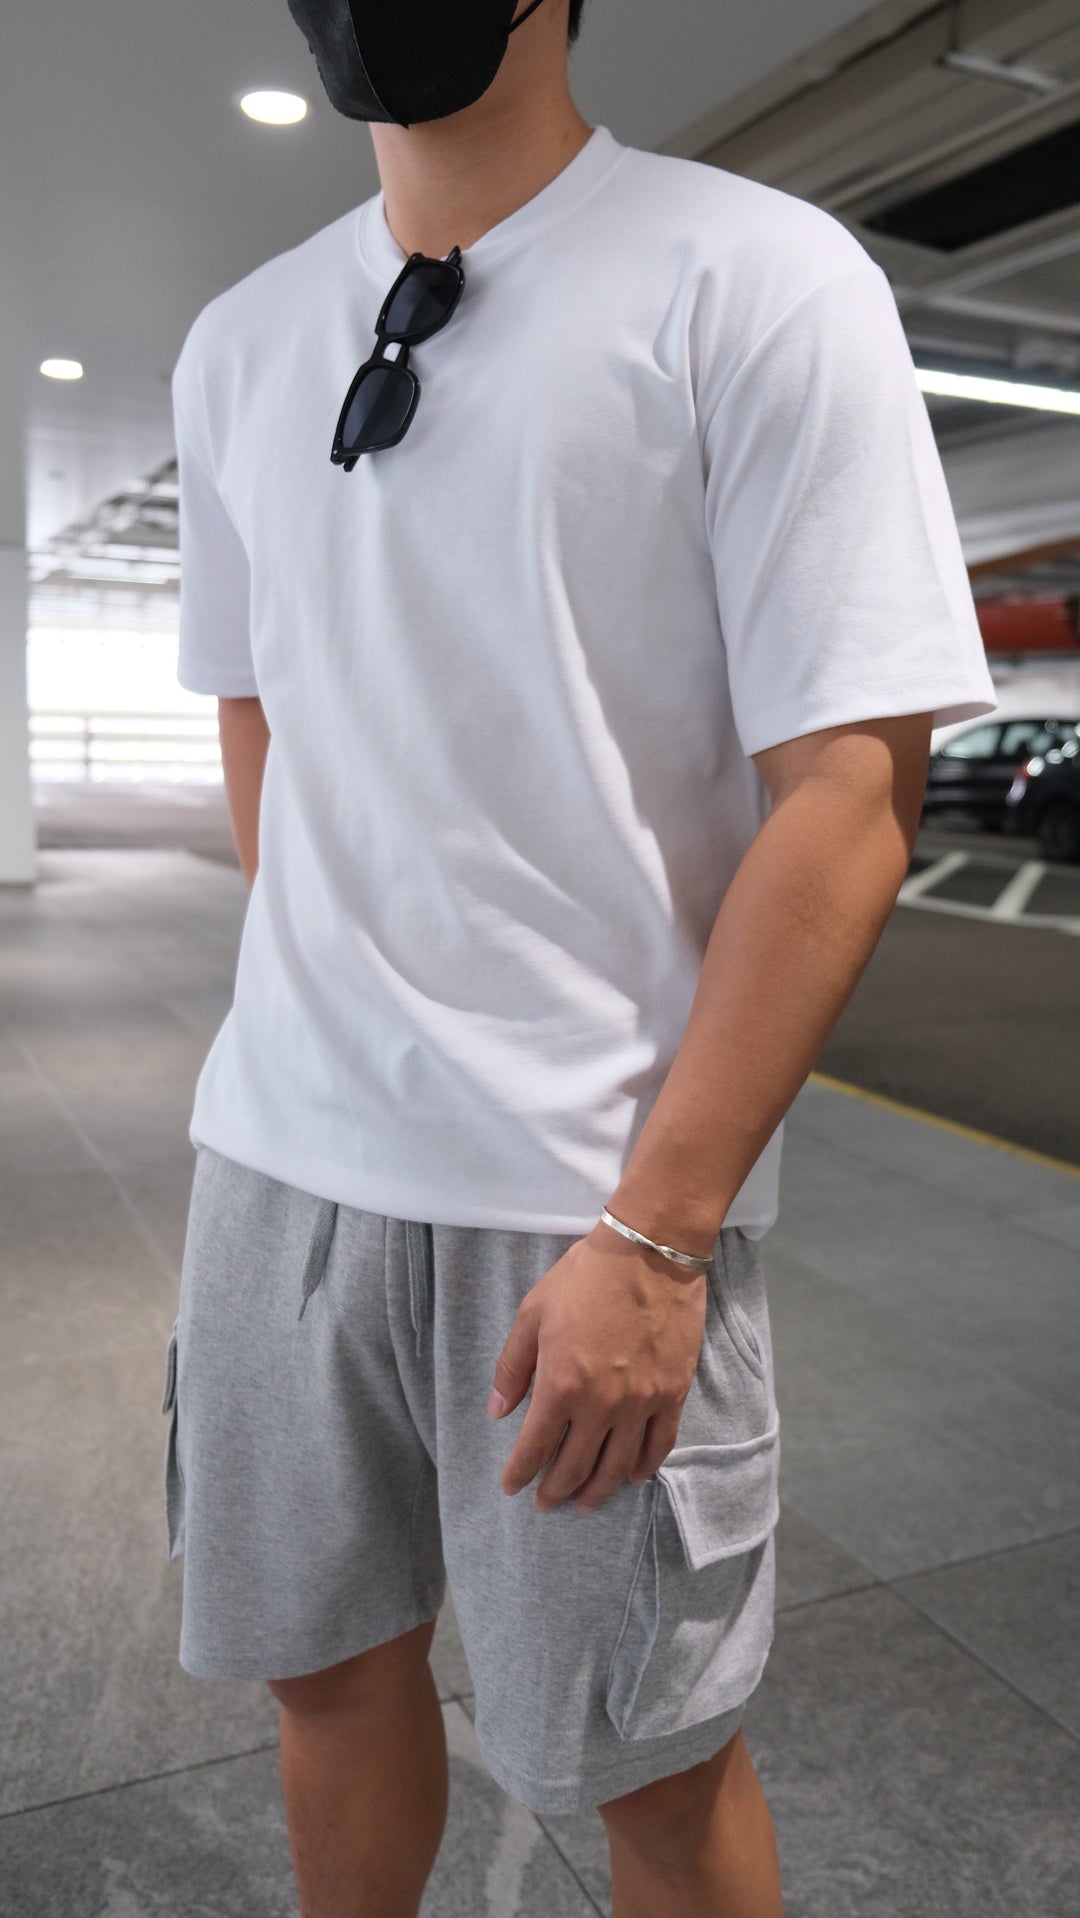 韓國男裝-淺灰短褲Grey Shorts